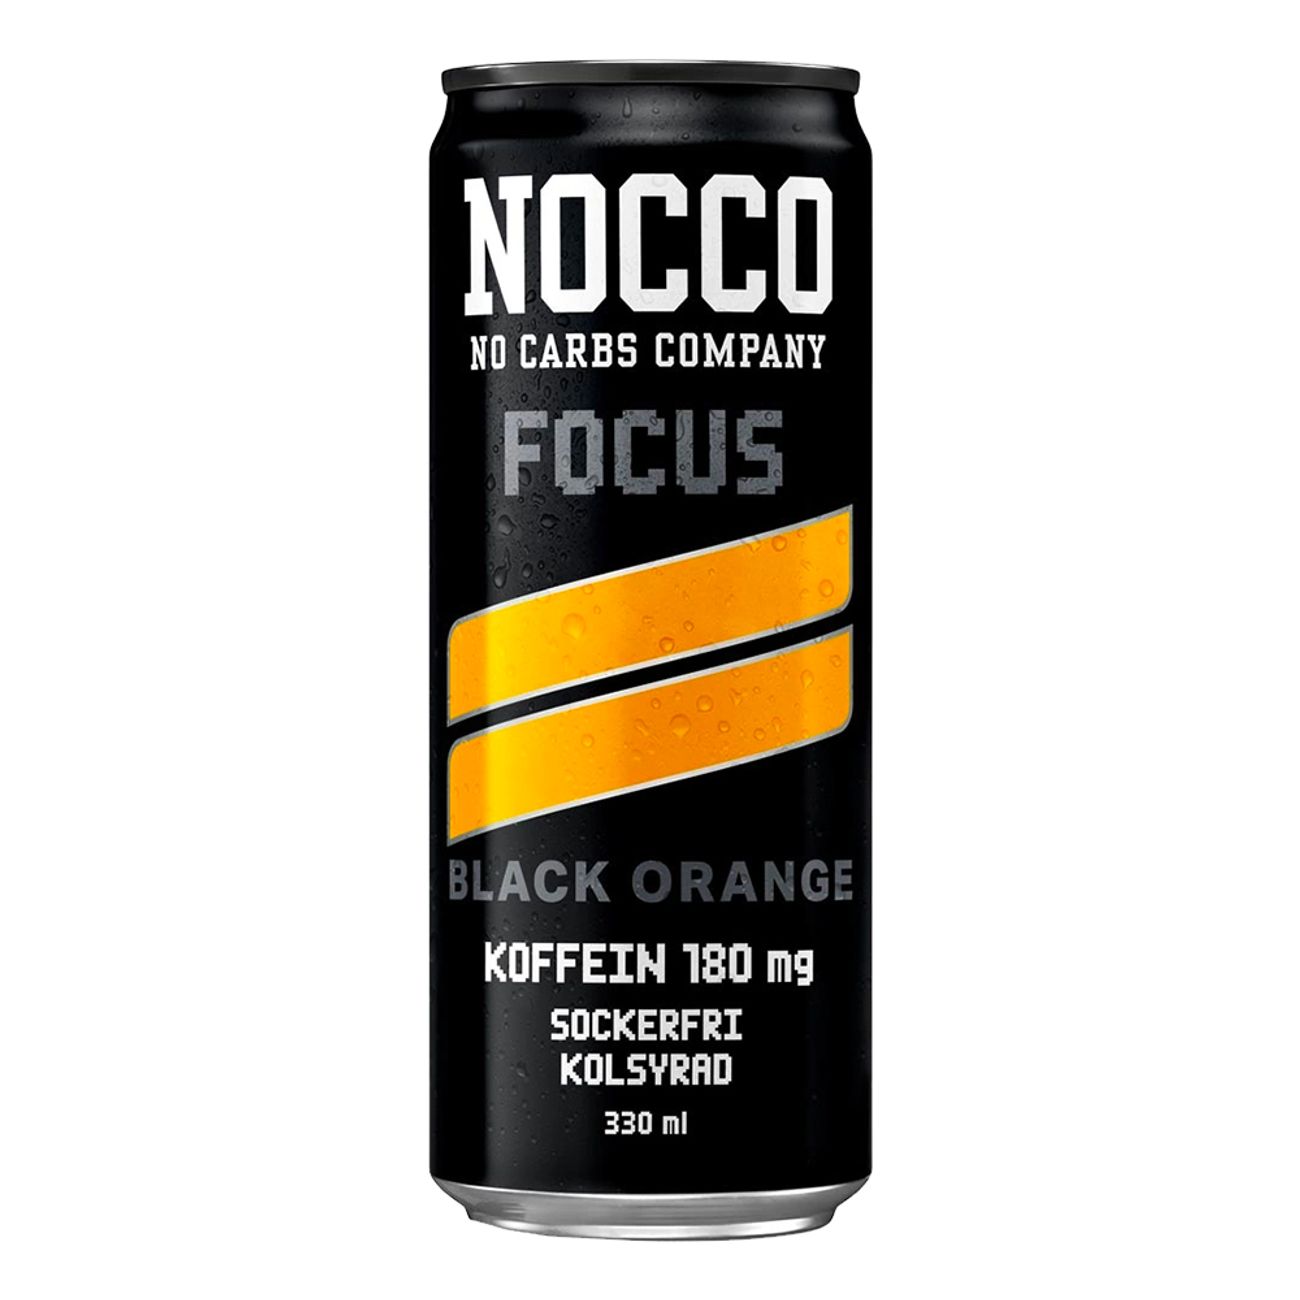 nocco-focus-black-orange-92307-1